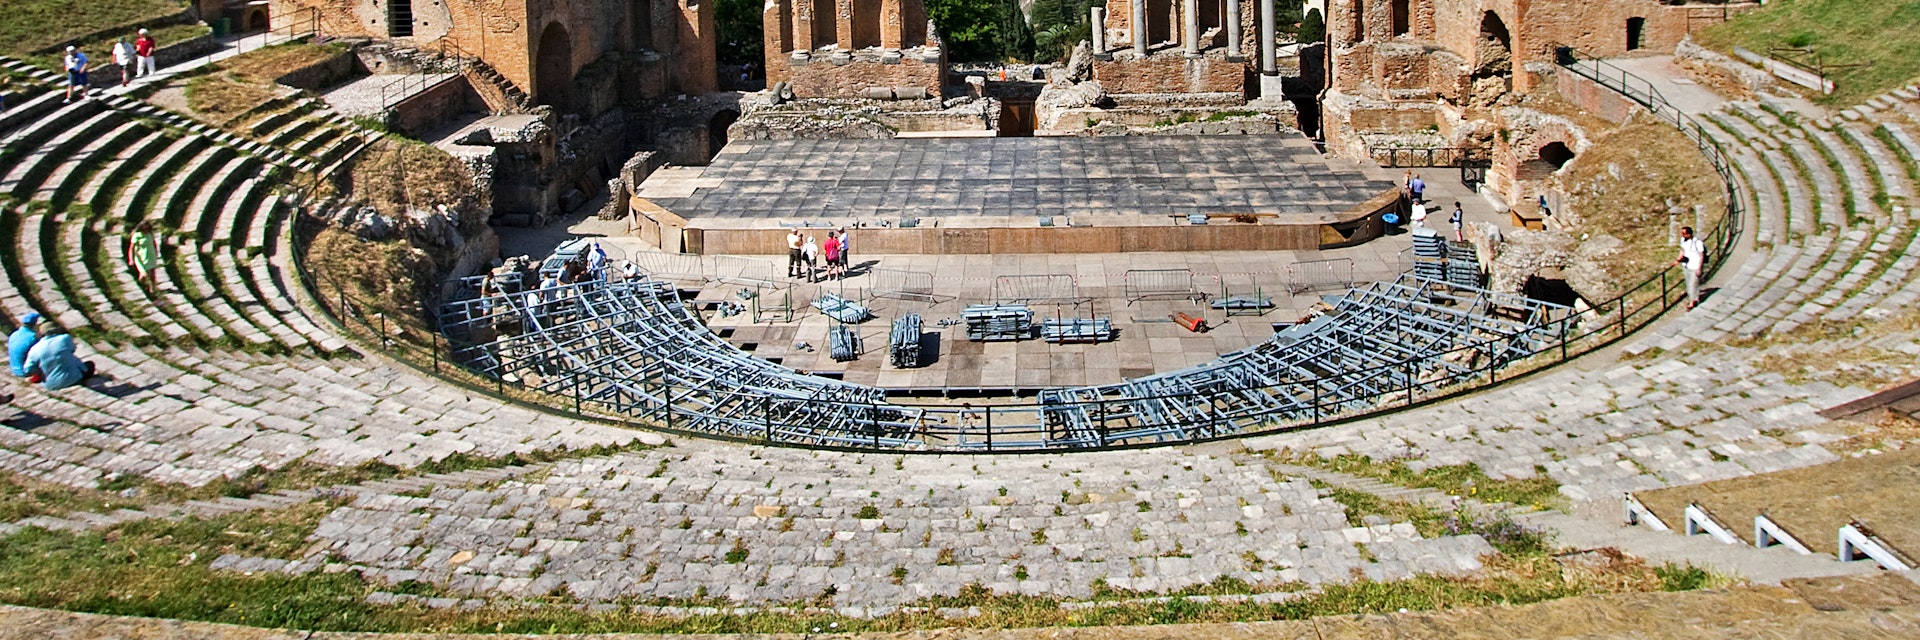 Greek theatre in Taormina